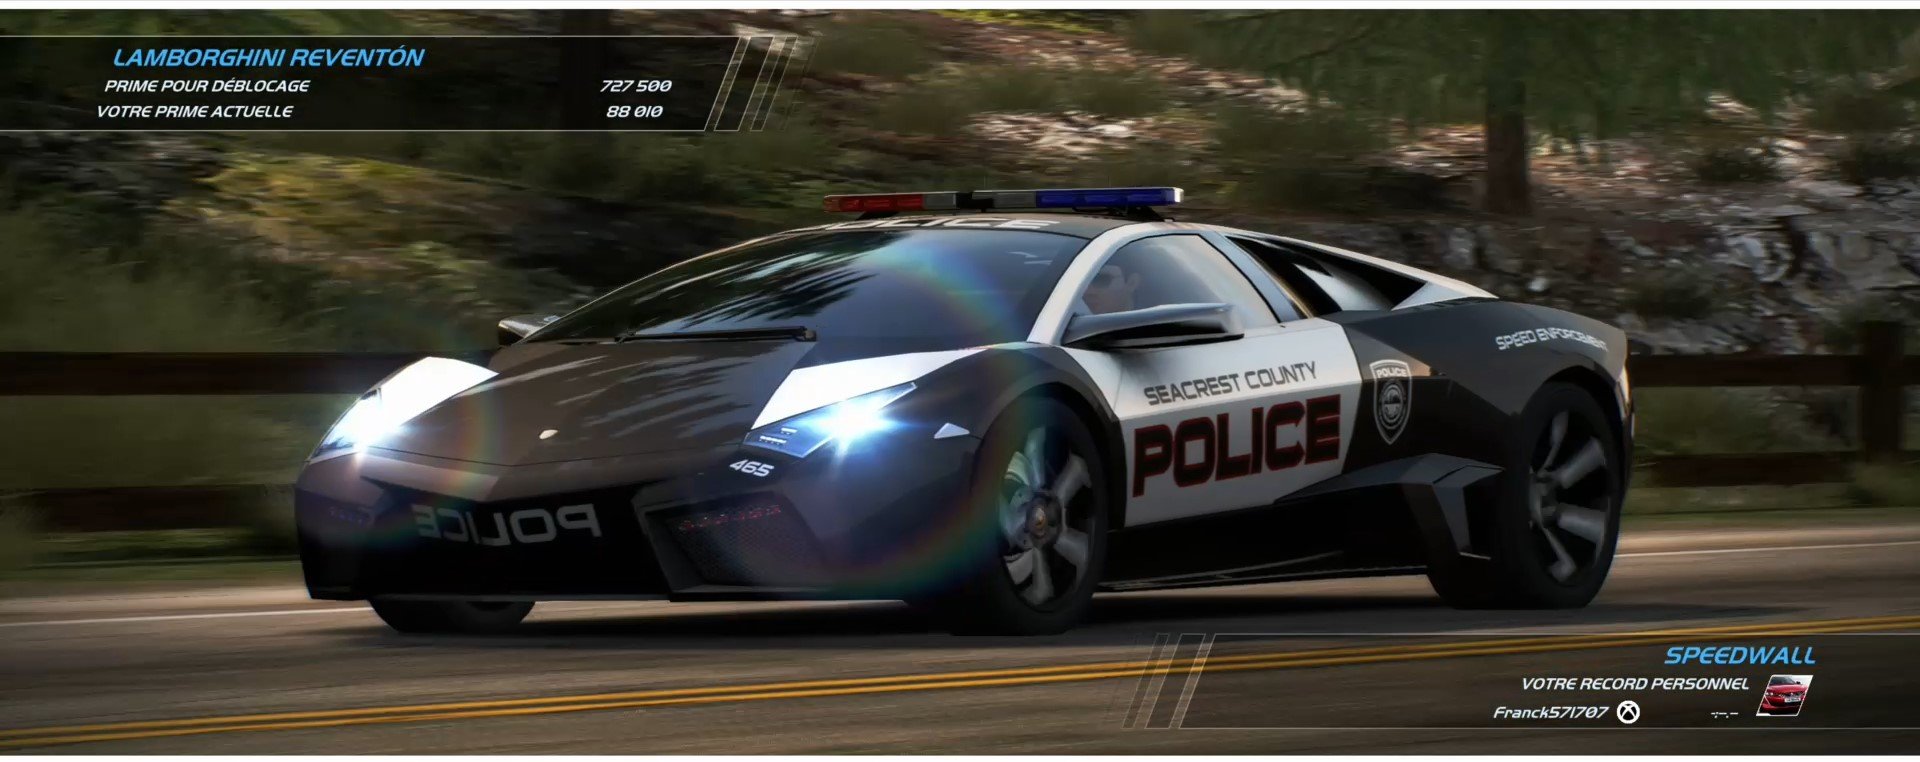 Need-For-Speed-Hot-Pursuit-Remastered-Lamborghini-Reventon-Flics-2